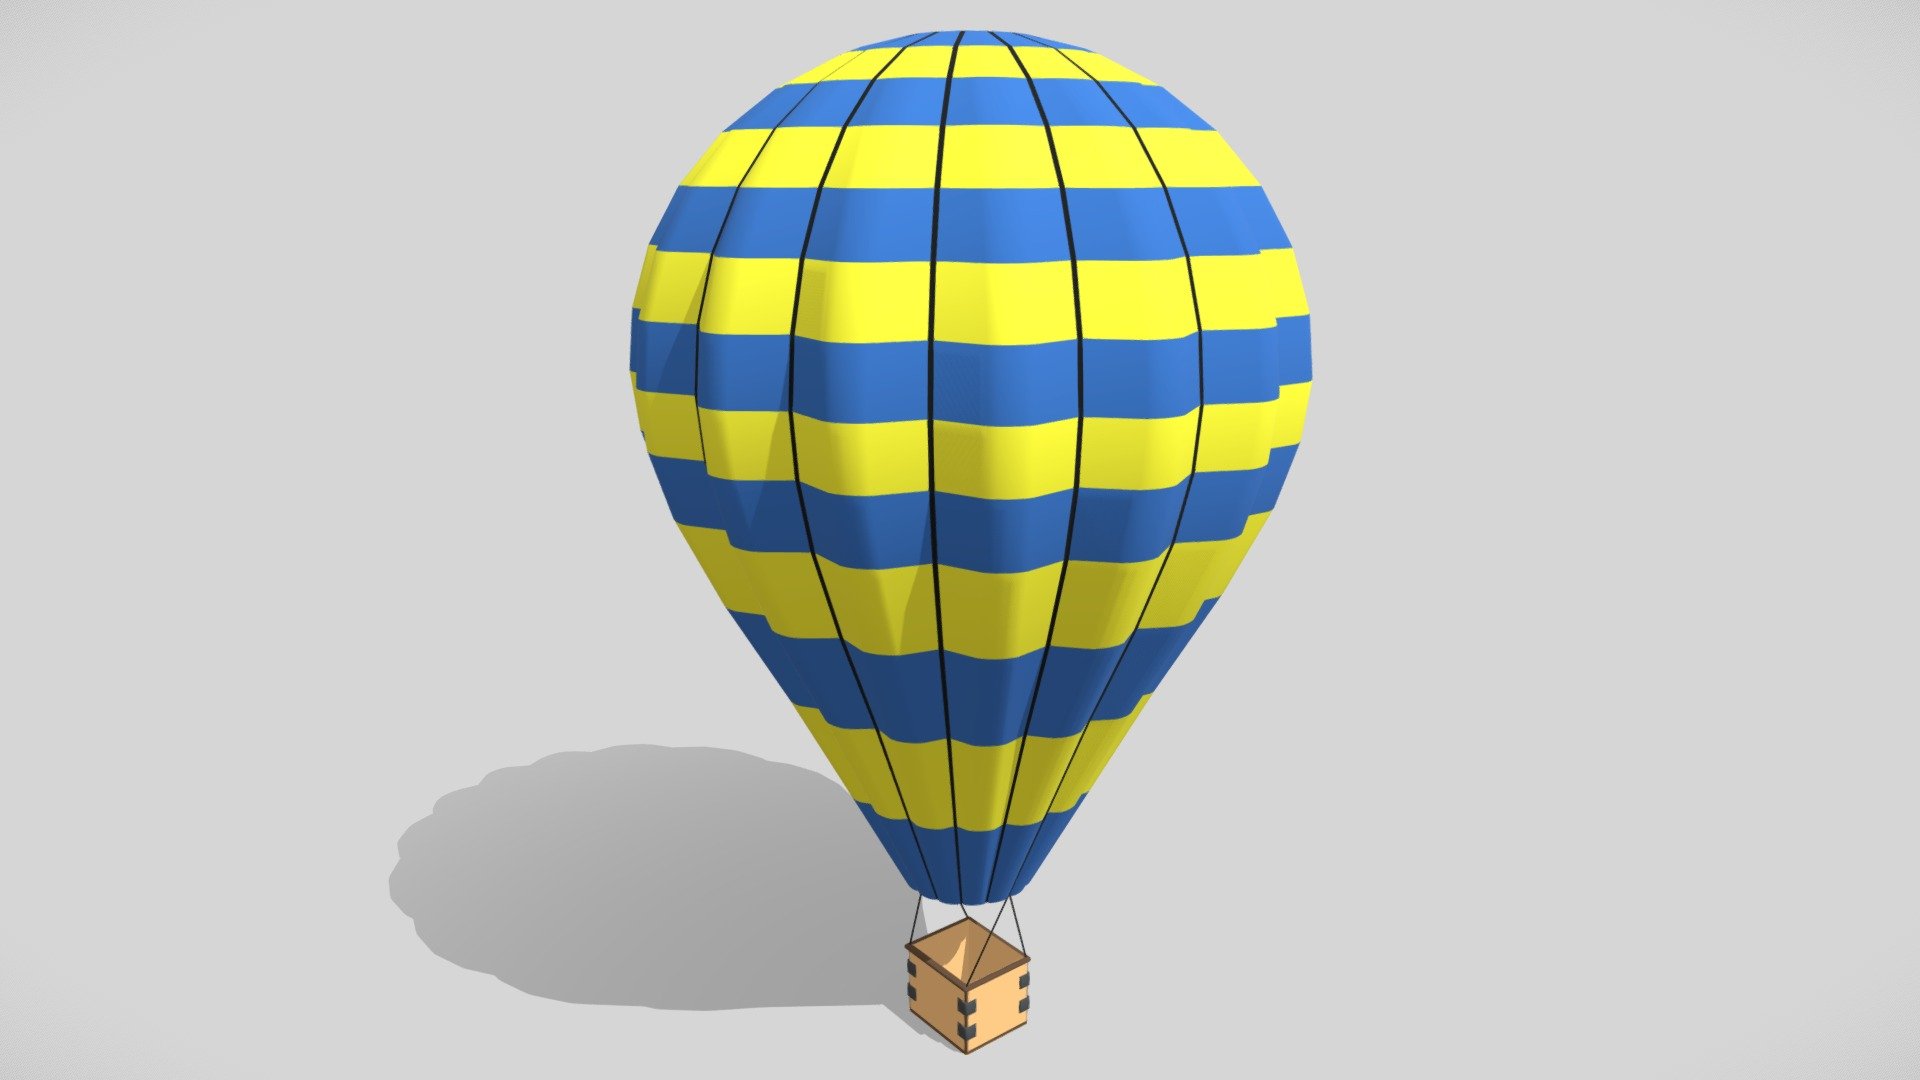 Hot Air Balloon made in Blender - Hot Air Balloon - 3D model by Sanket Joshi (@Sanket_Joshi) 3d model